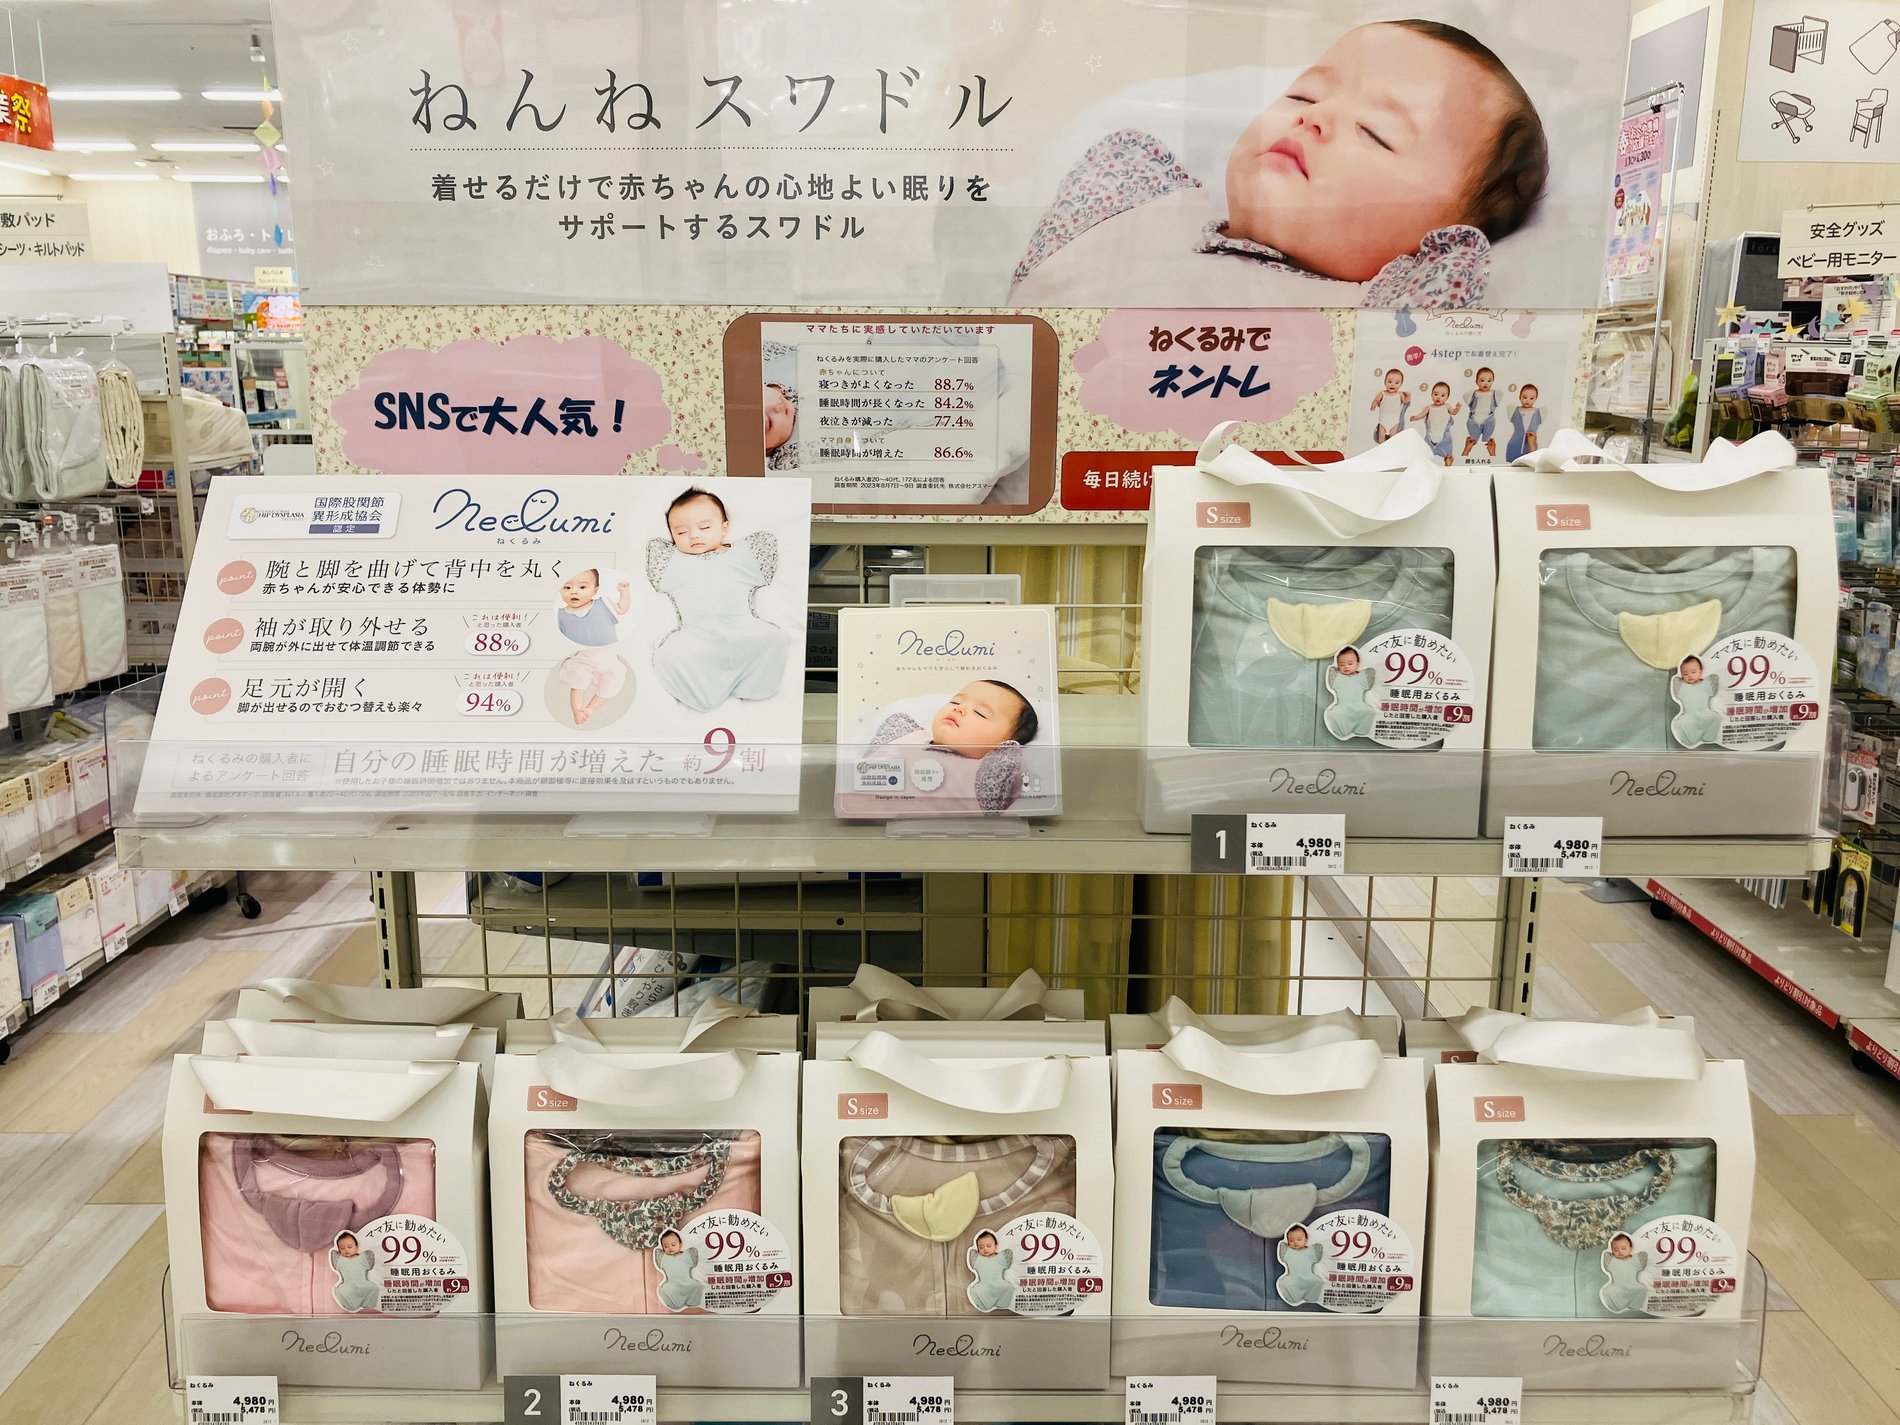 ☆おすすめ商品のご案内☆「ねくるみ」
着せるだけで赤ちゃんの心地よい眠りをサポートします♪
詳しくは店頭をご覧下さい♪